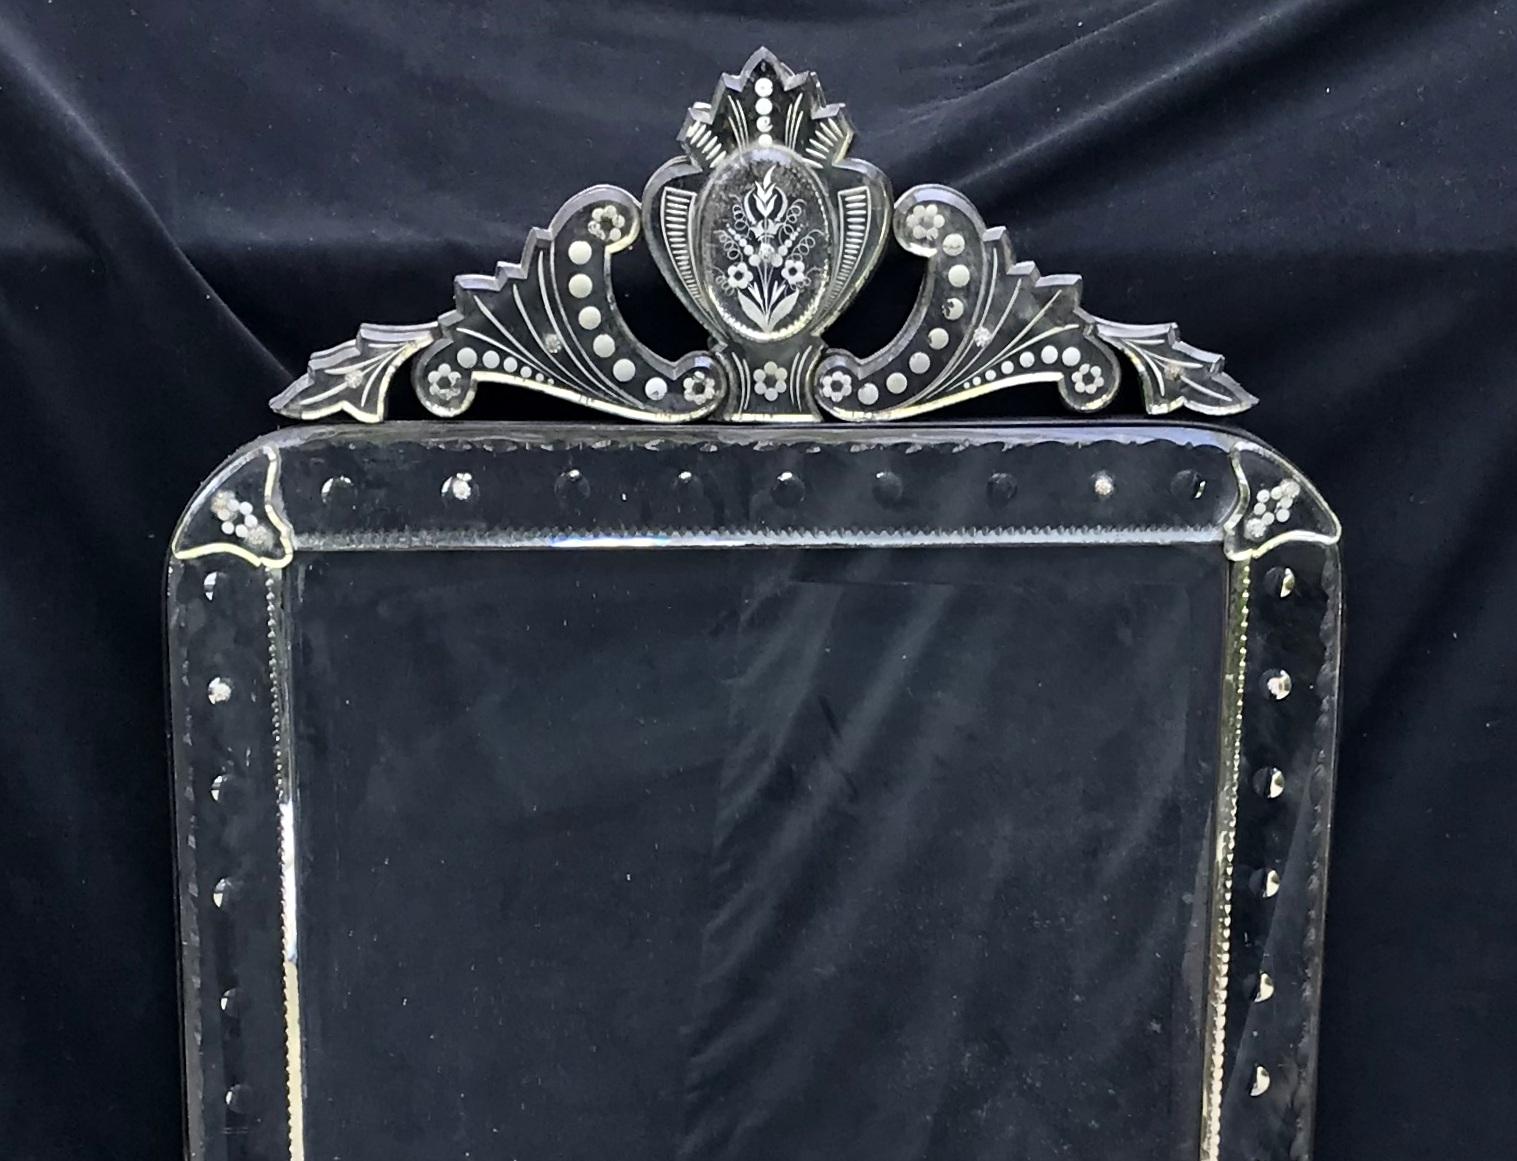 Magnifique miroir vénitien octogonal avec couronne. Le miroir présente des détails finement gravés sur le dessus et les côtés, ainsi qu'un biseautage. 
Les dimensions sont de 63